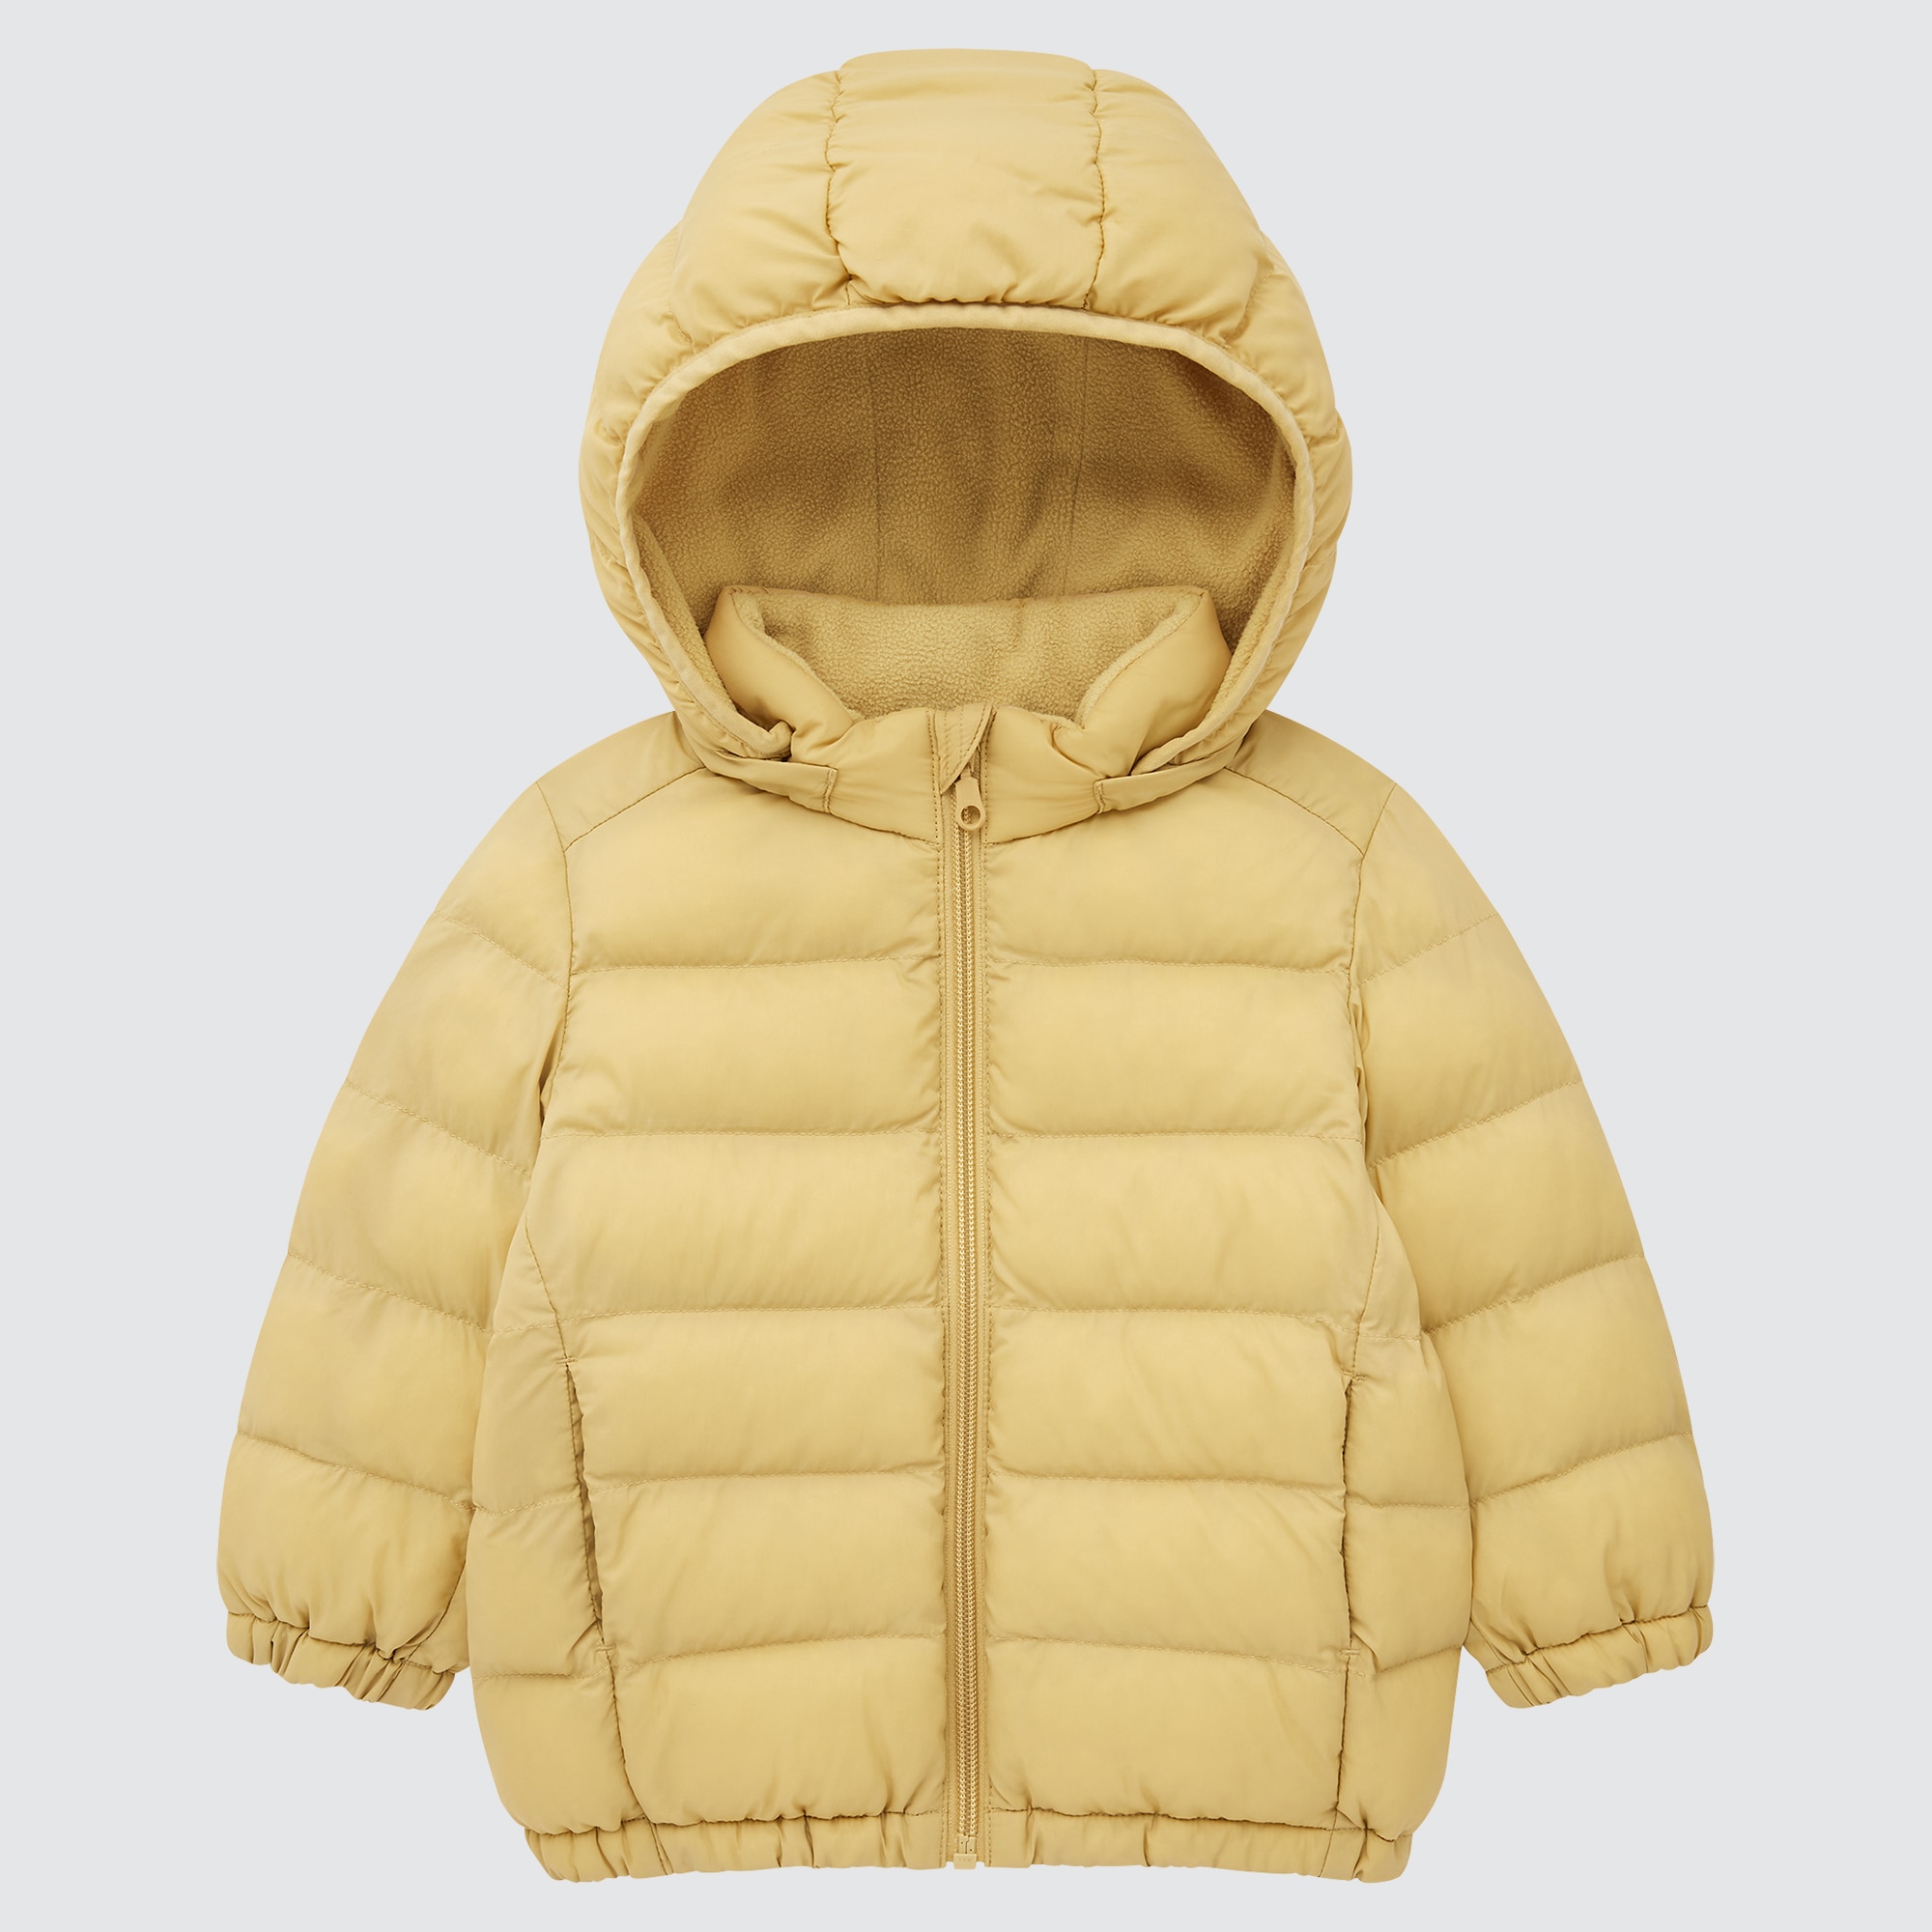 2021 Edition Uniqlo Clothing Coats Parkas Light Warm Padded Washable Full-Zip Parka 